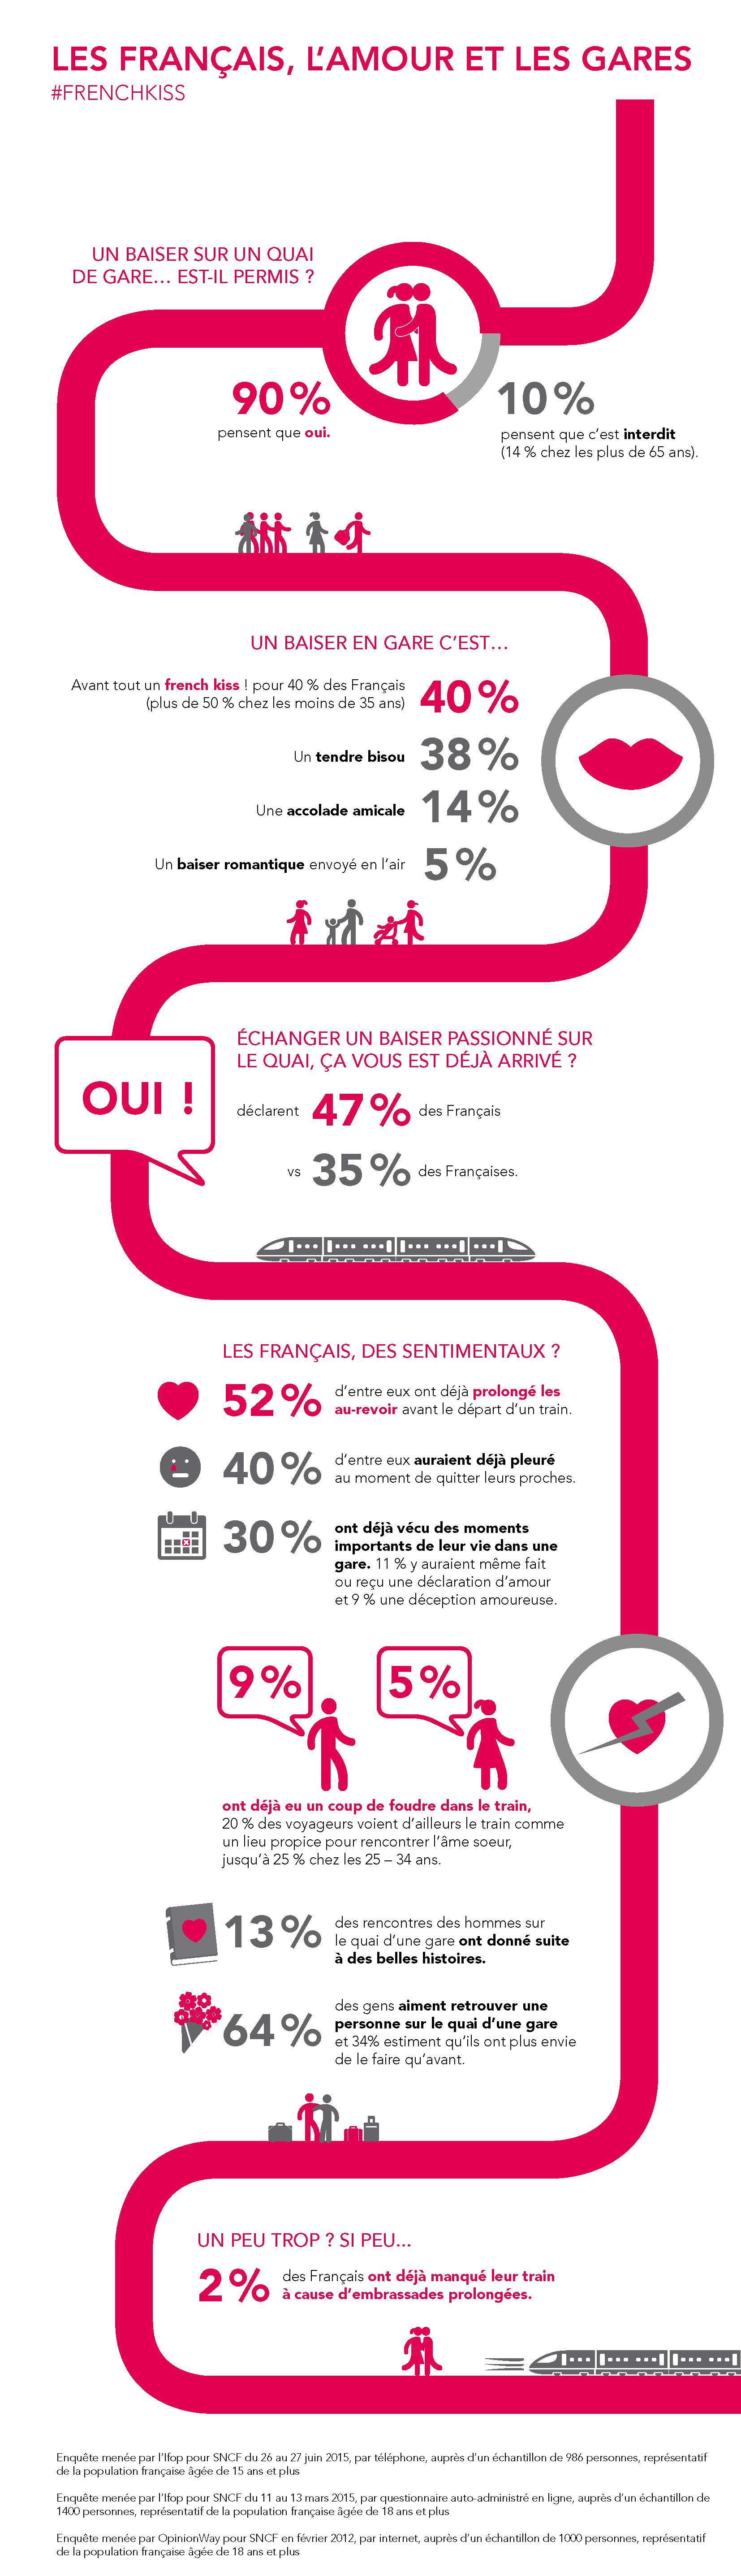 Infographie Les Francais l amour et les gares juillet 2015 1.jpg